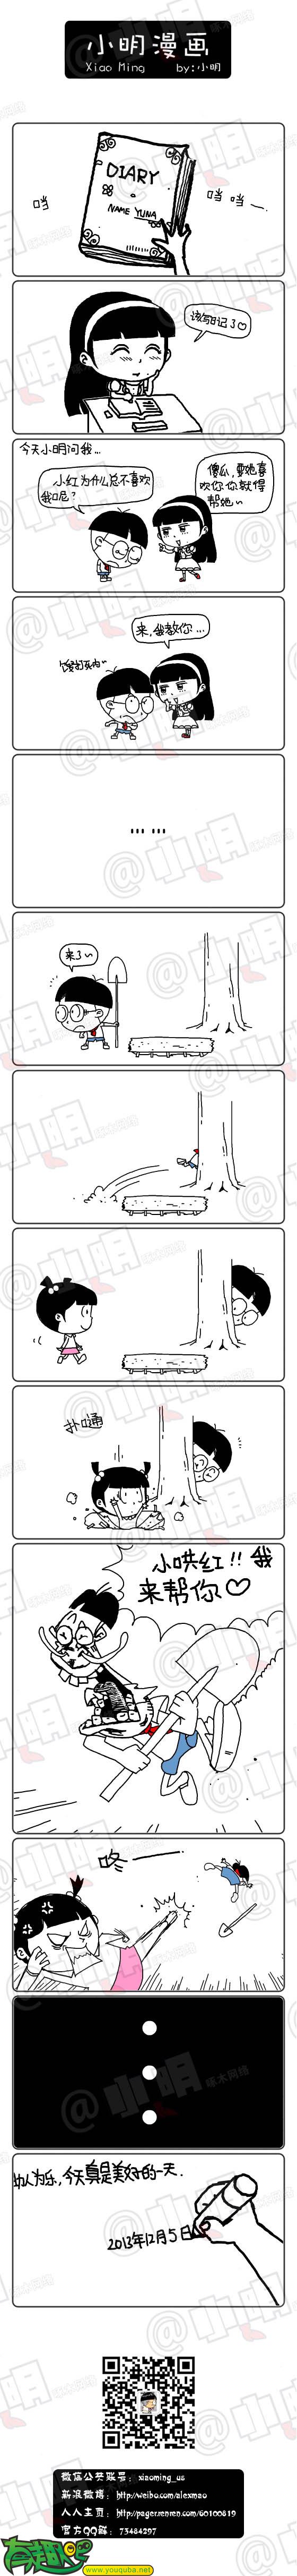 小明系列漫画：助人为乐